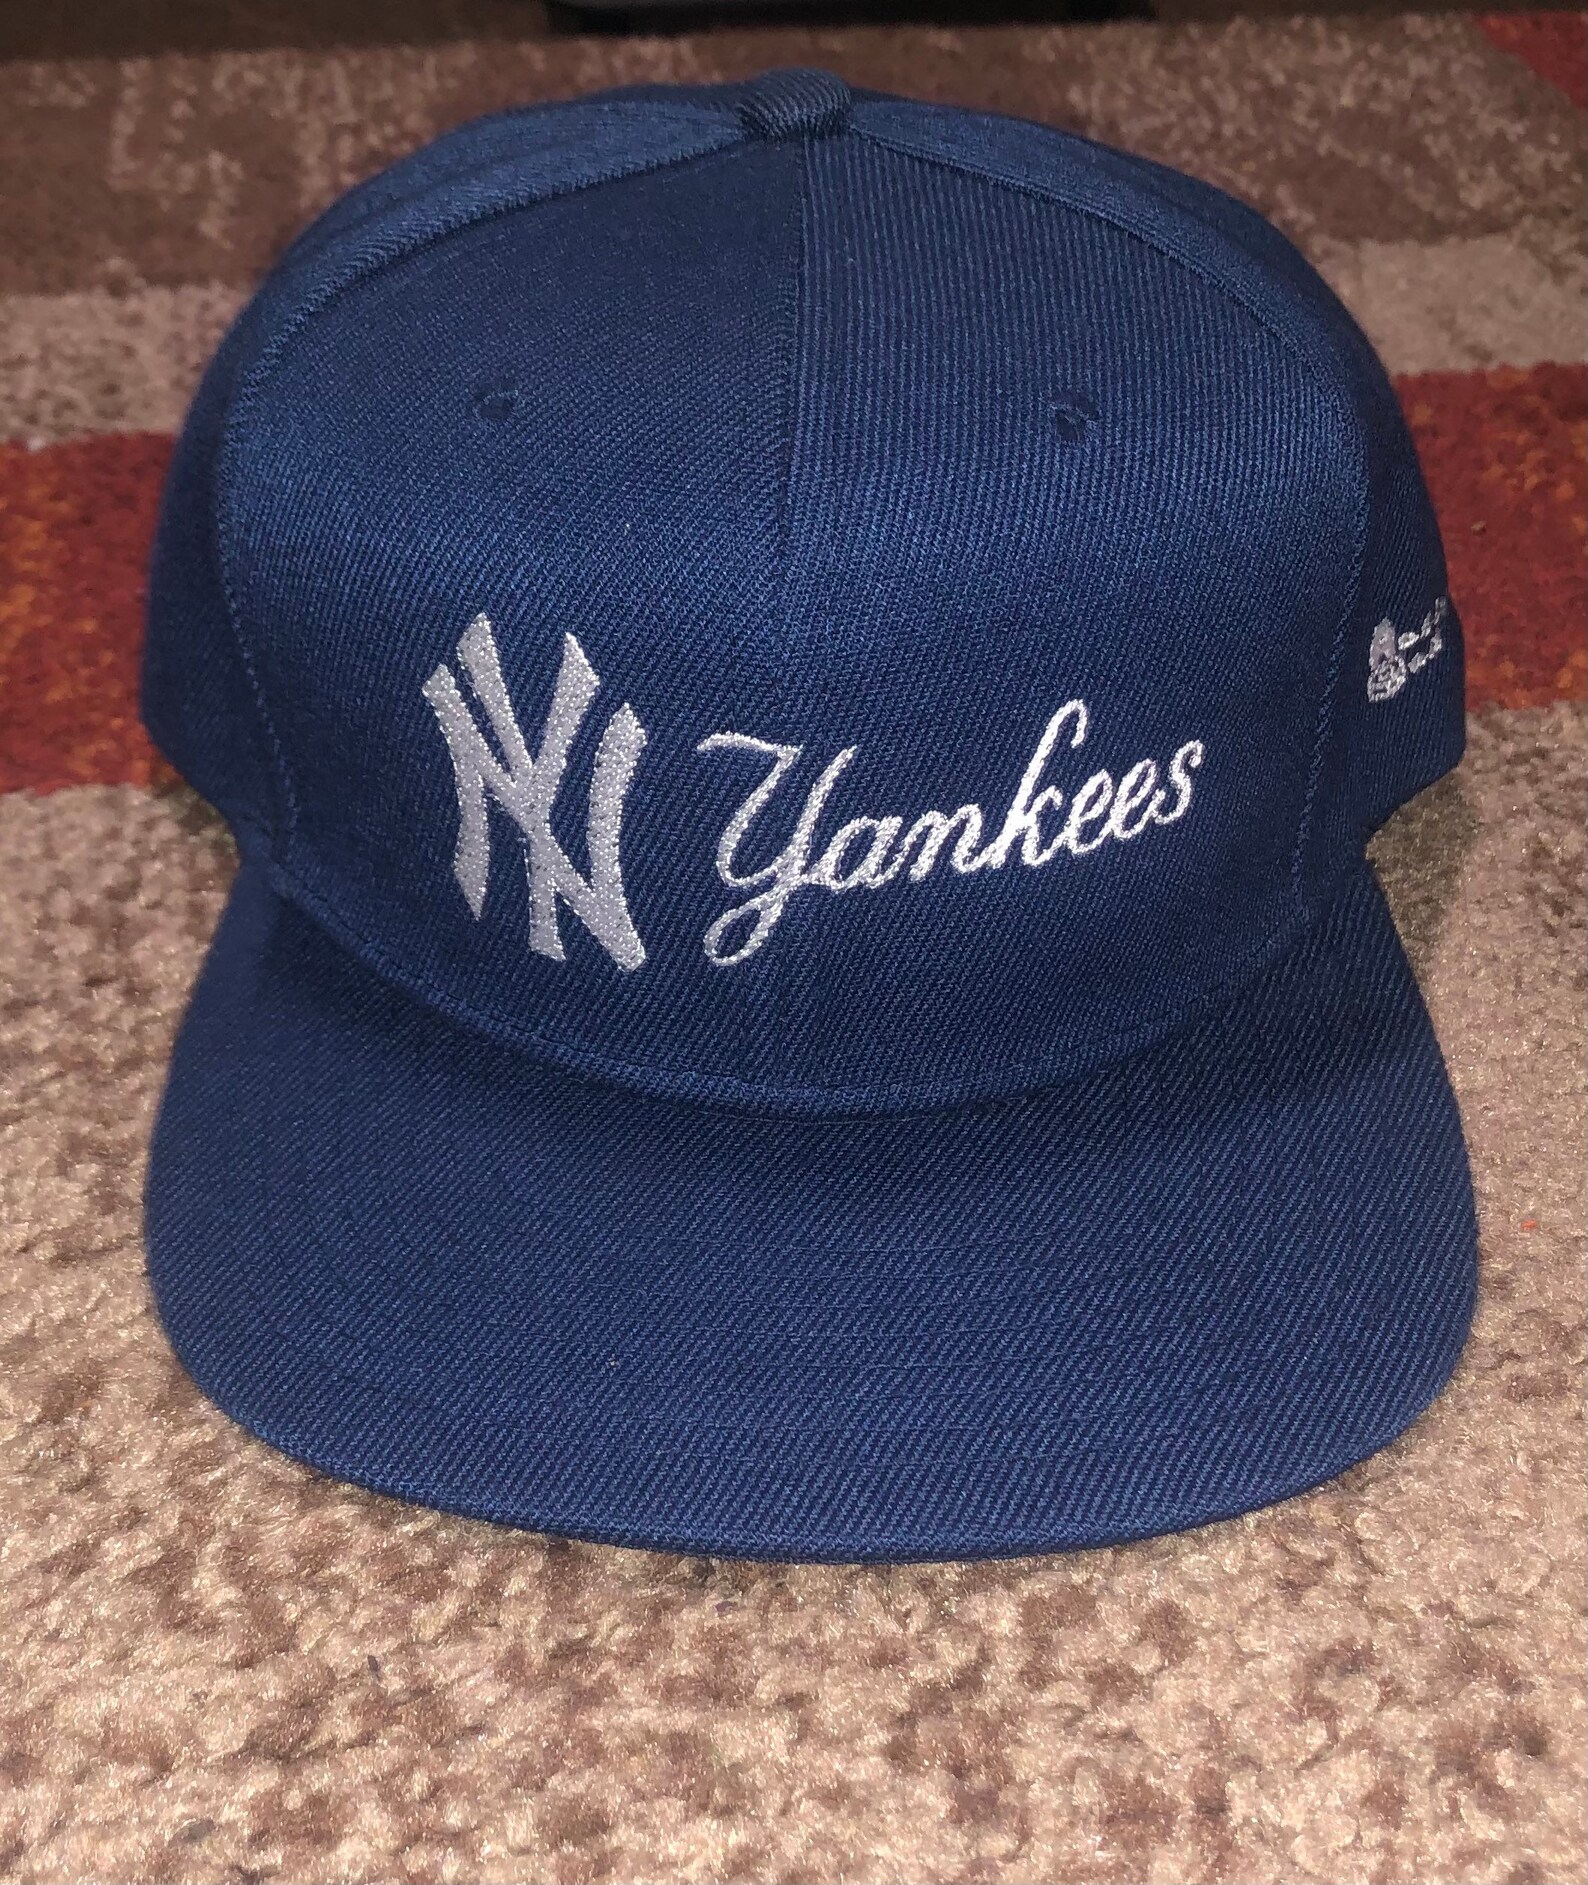 New York Yankees baseball hat blue white red Major League | Etsy